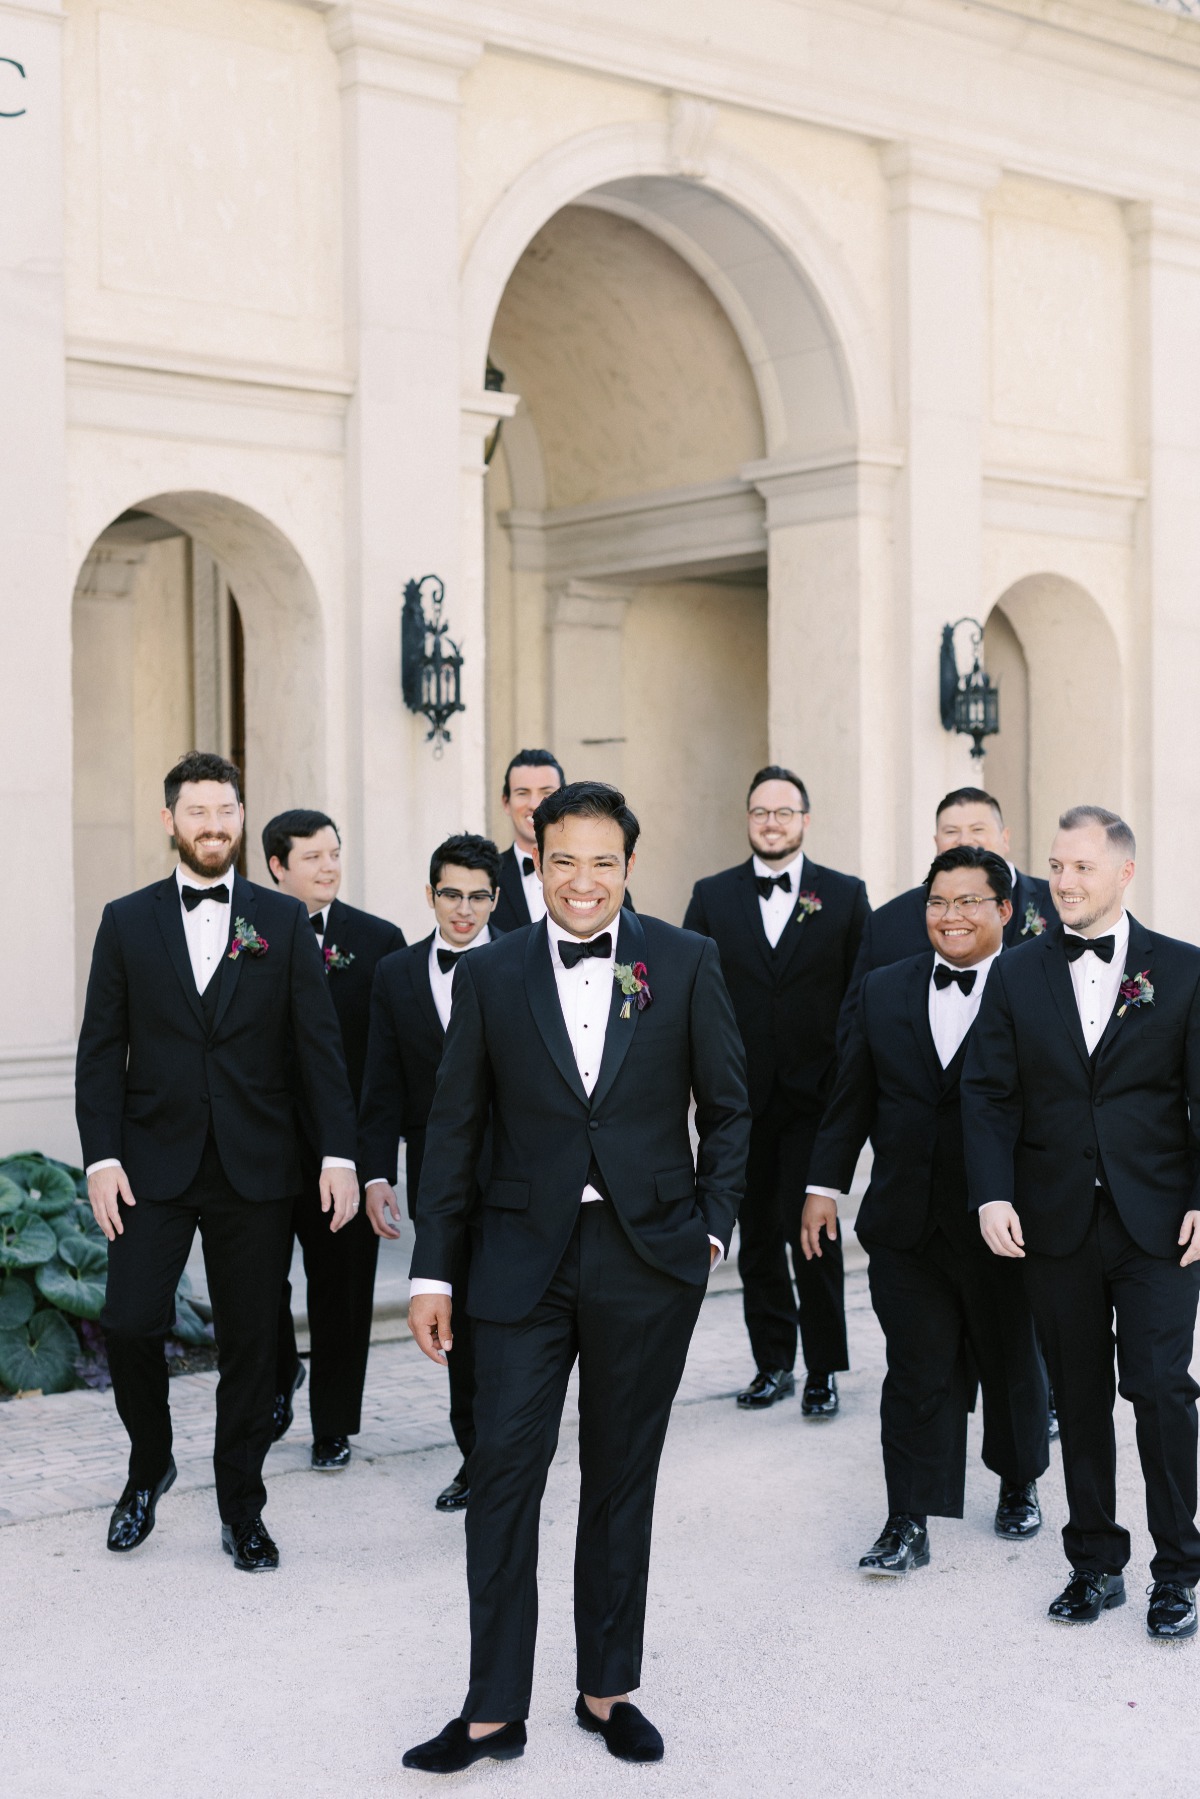 Groom and groomsmen walking toward camera in black suits with black bowties